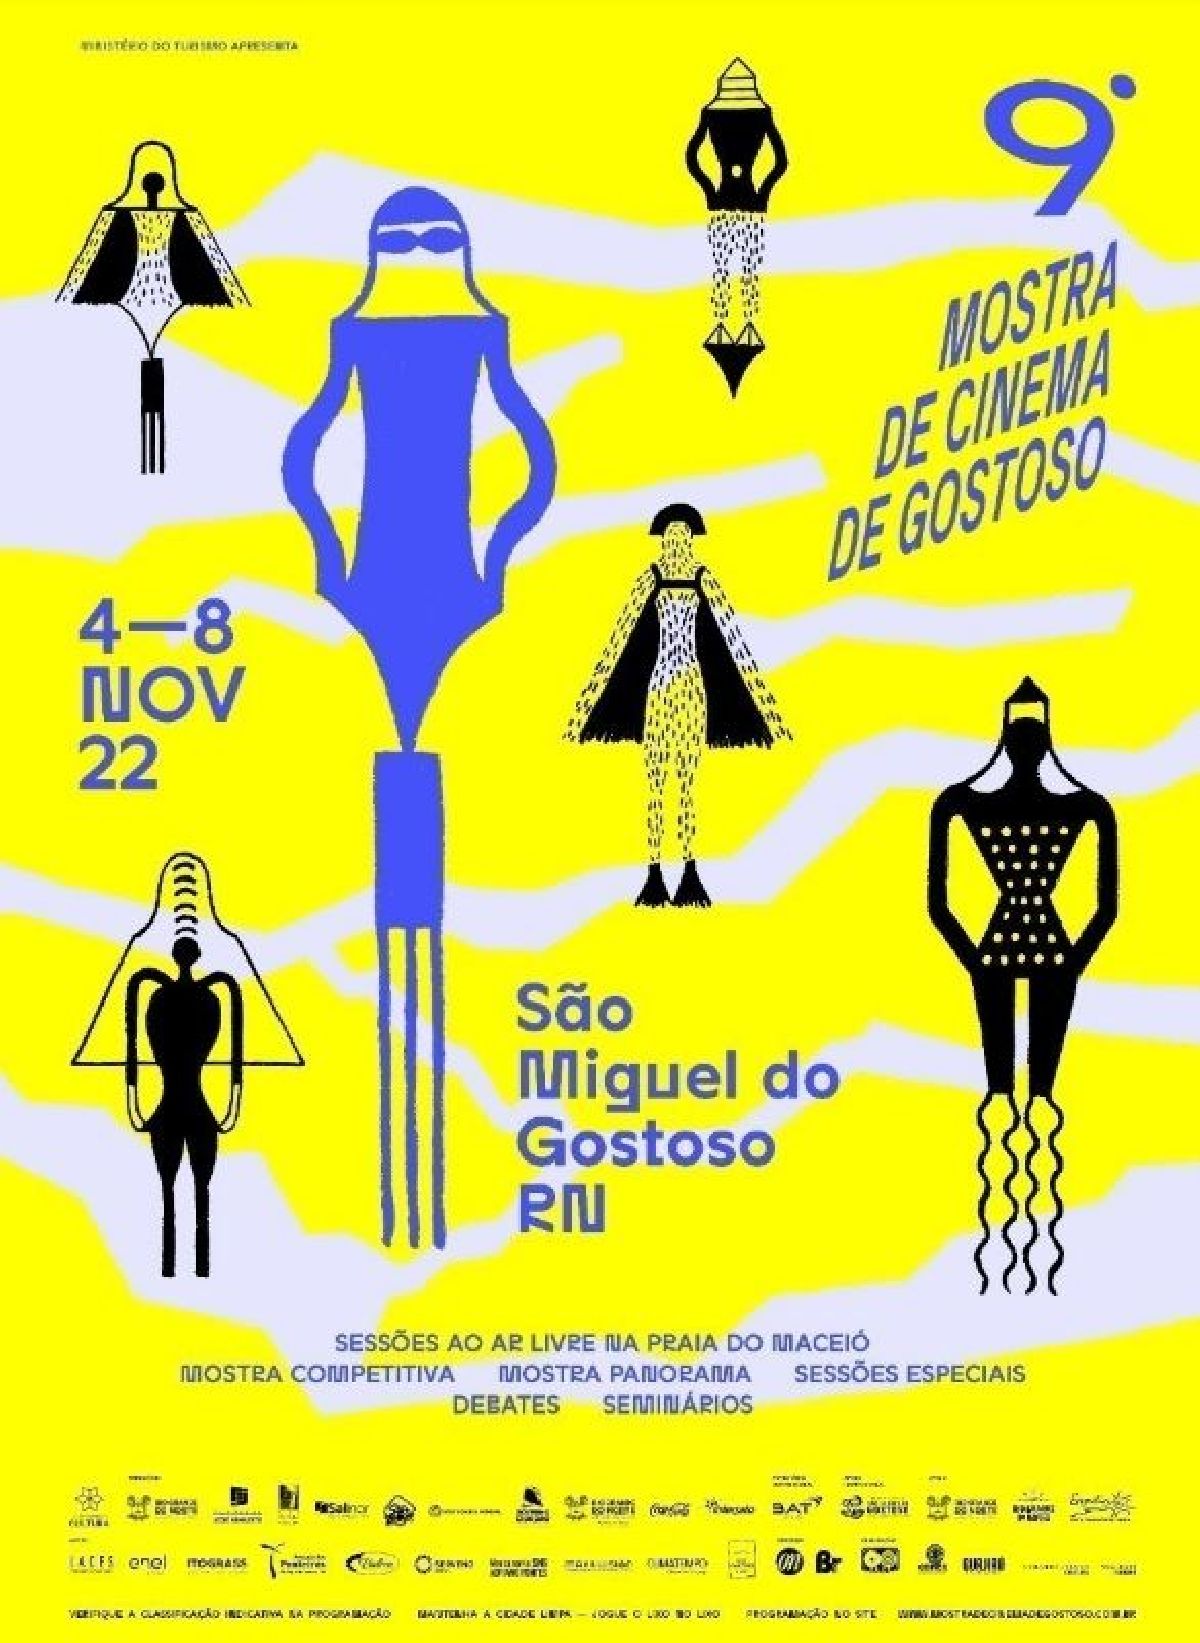 9ª MOSTRA DE CINEMA DE GOSTOSO  APRESENTA SUA NOVA IDENTIDADE VISUAL